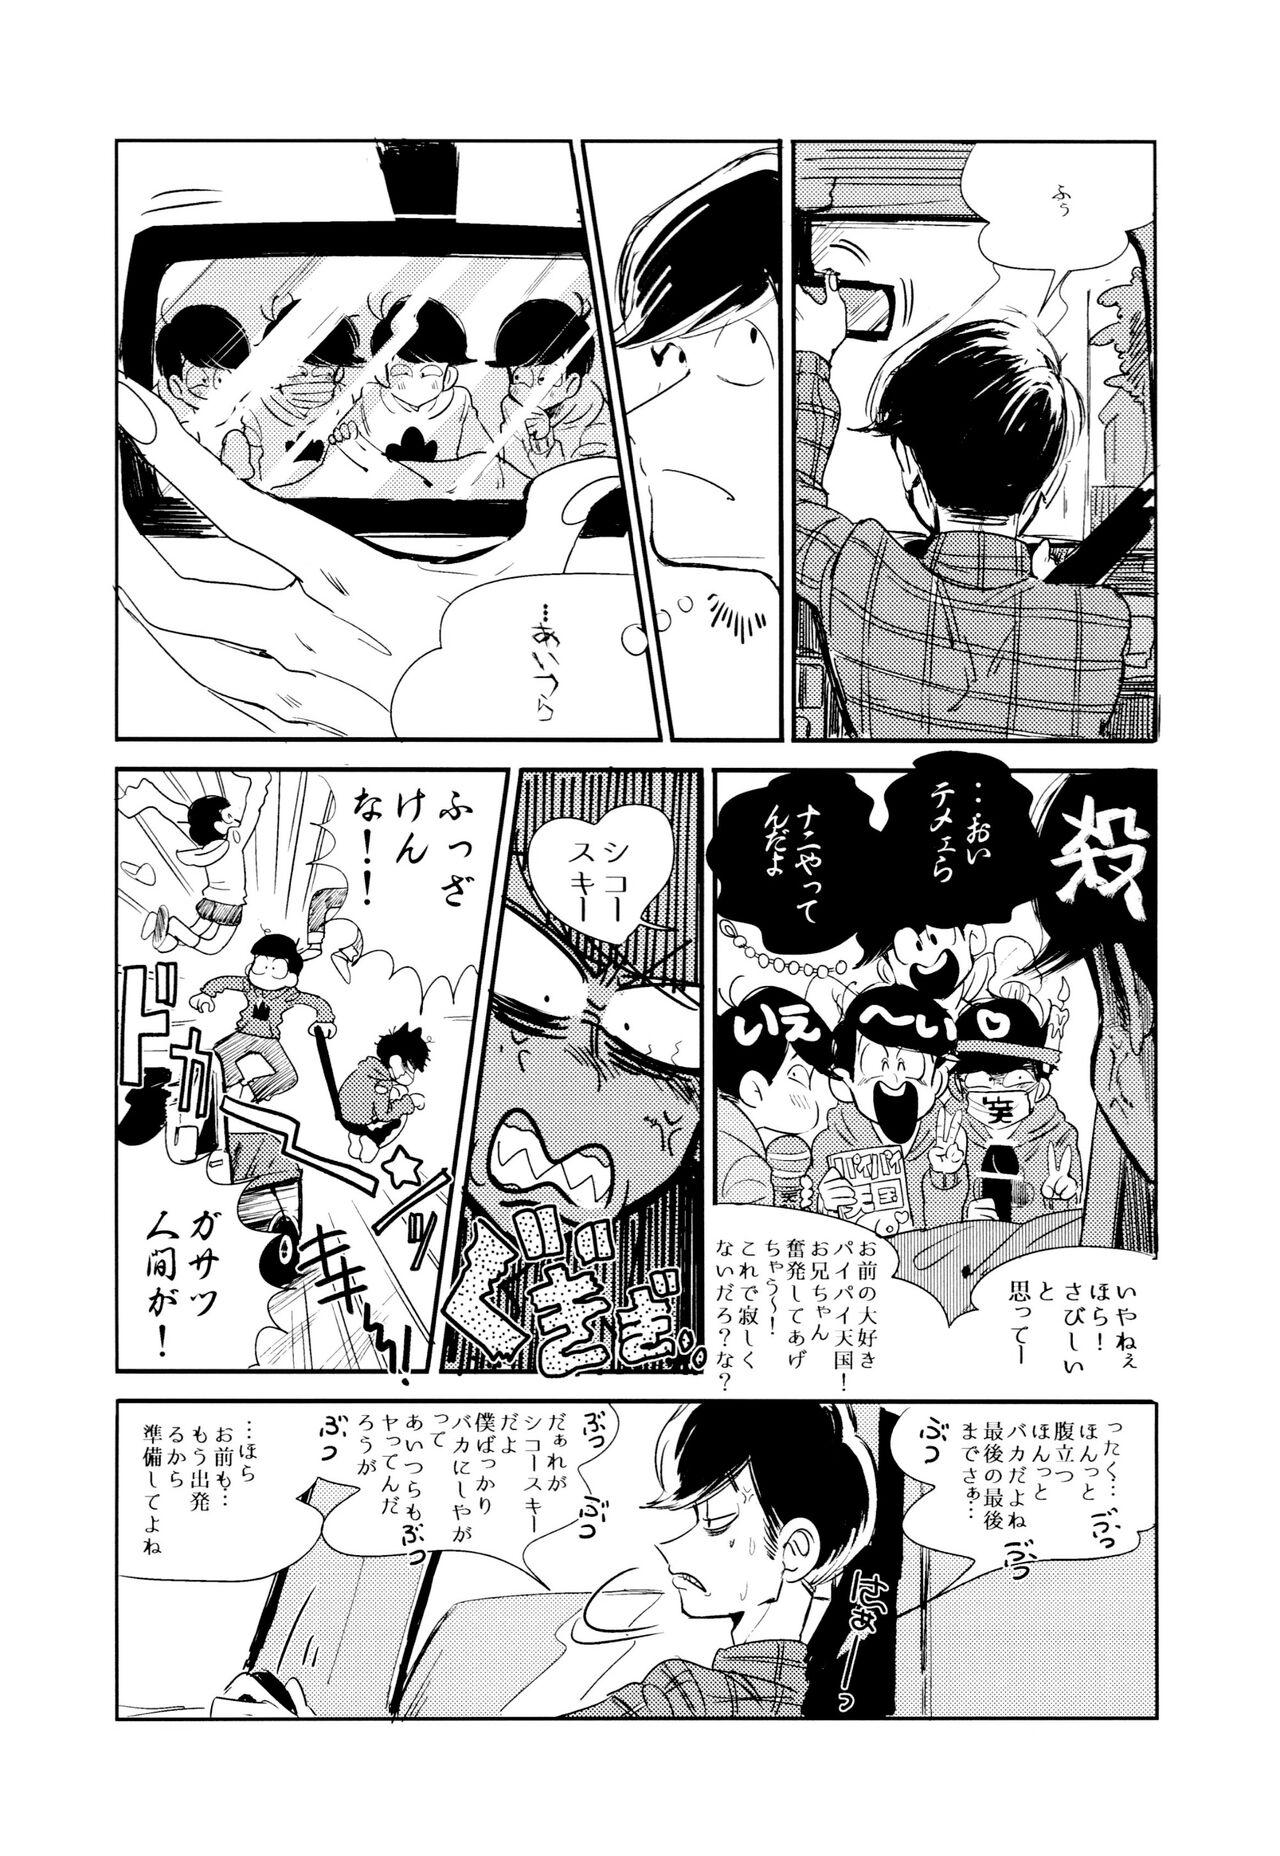 Morena Enputī wa rutsubo ni × sa rete - Osomatsu san Hand - Page 8